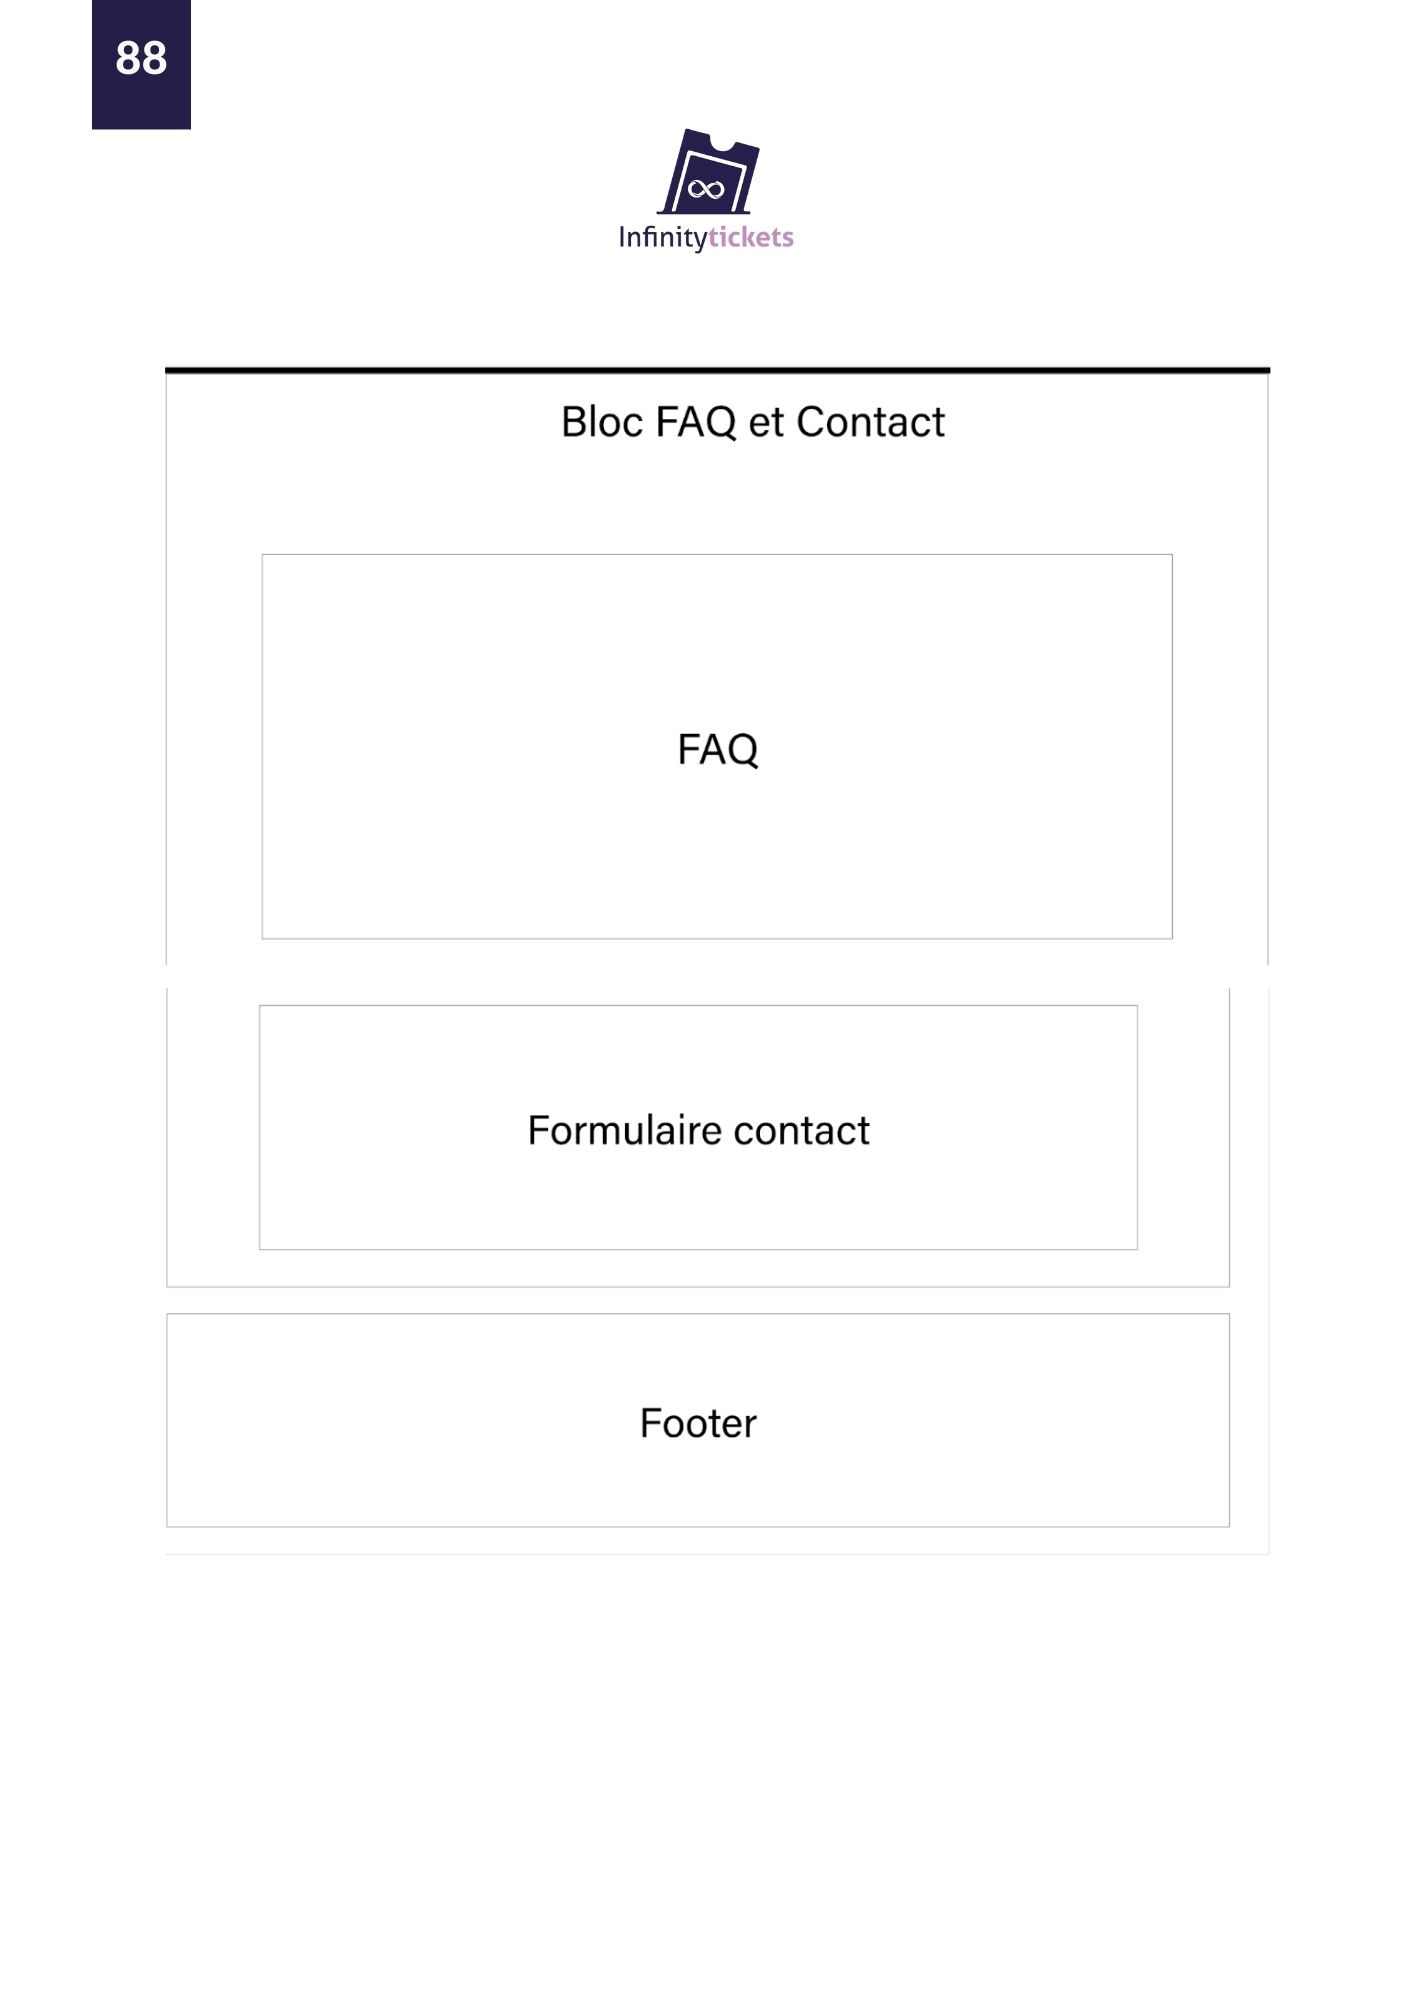 90 Blog FAQ et Contact